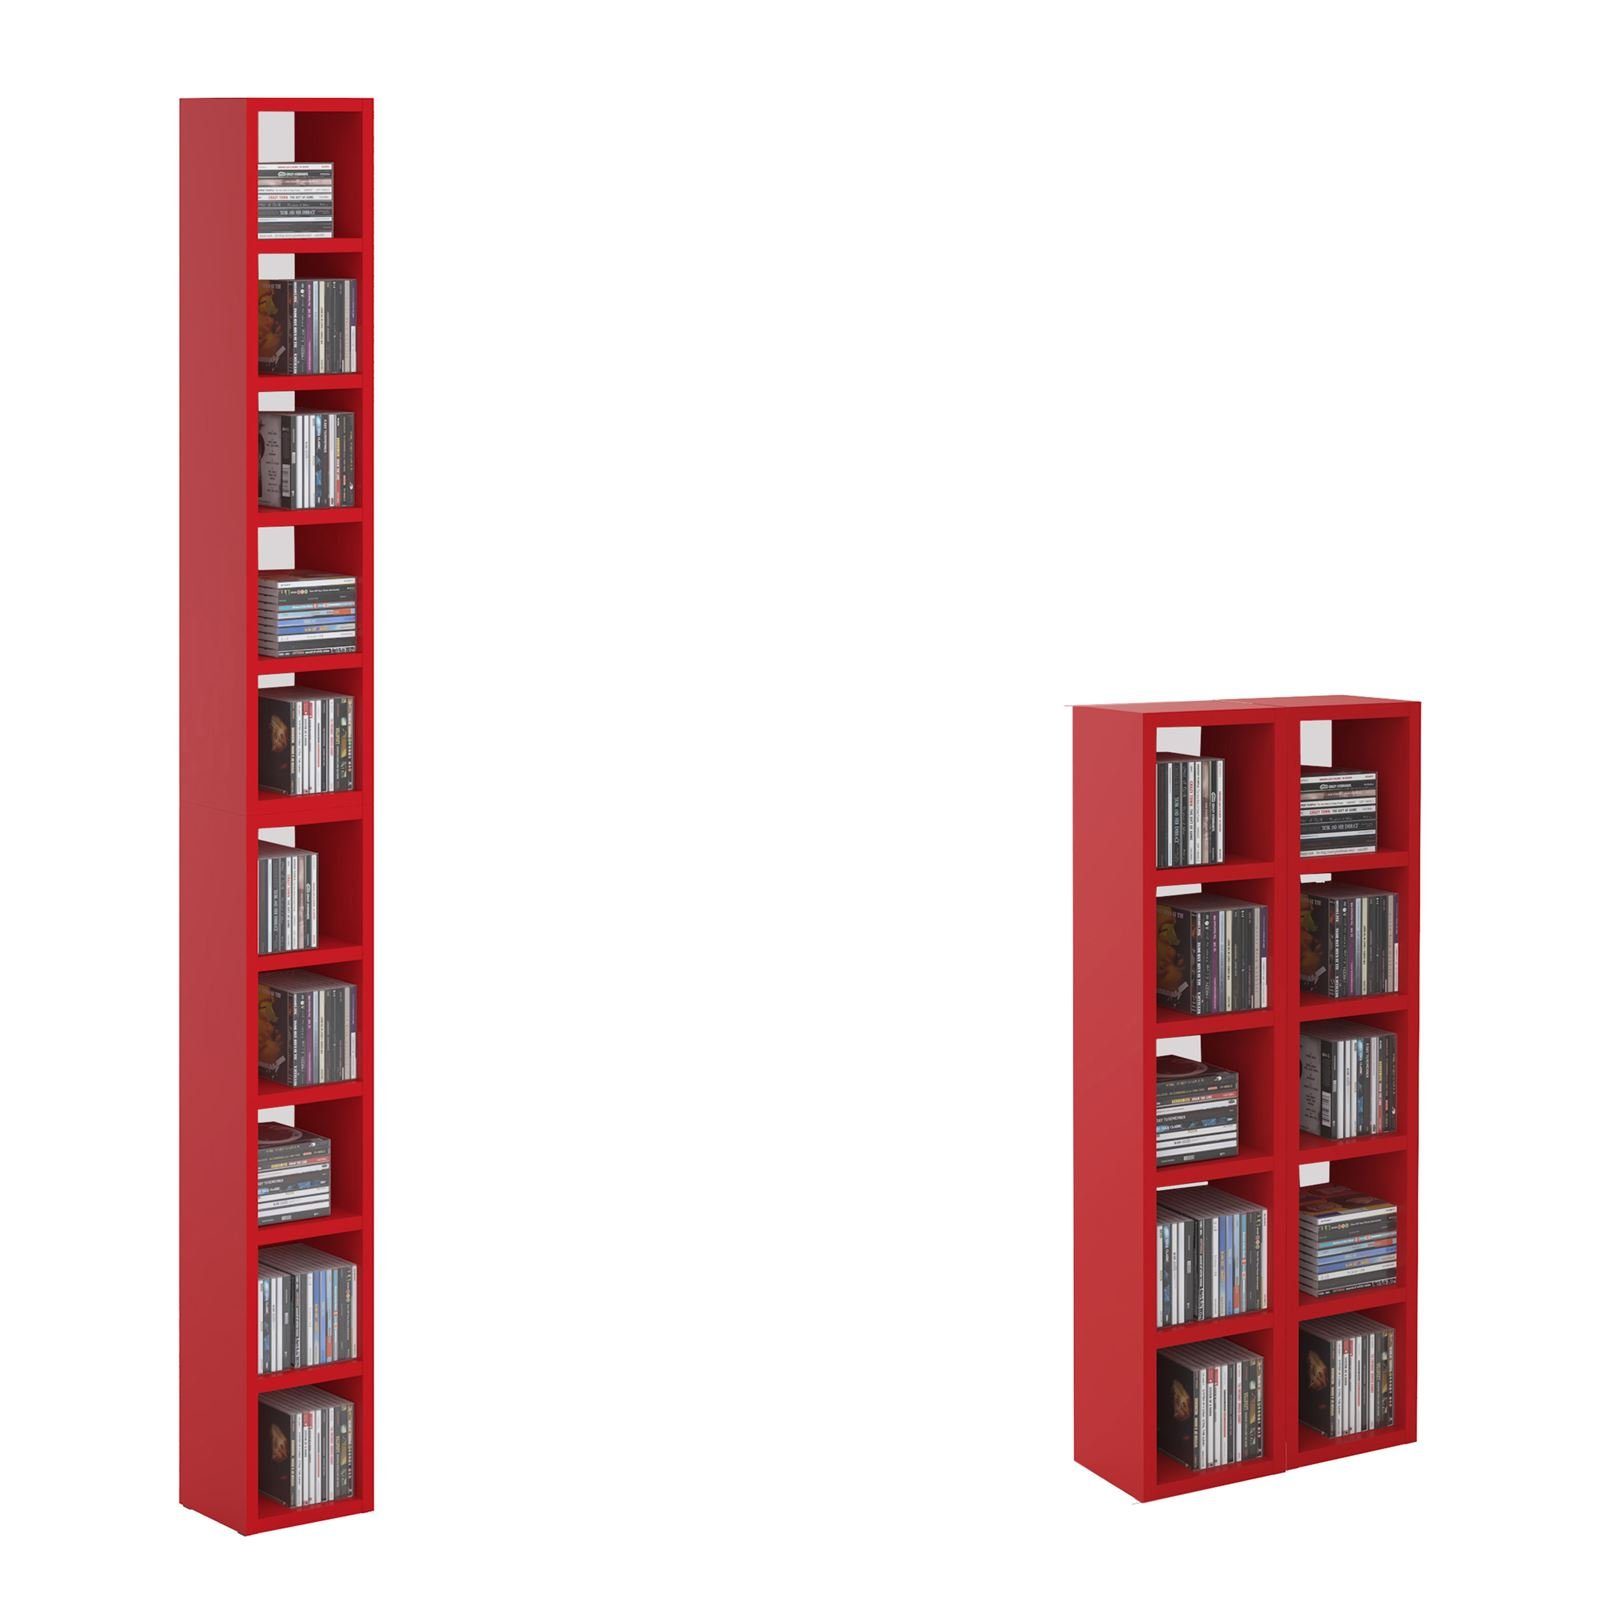 CARO-Möbel CD-Regal CHART, CD Regal DVD Stand Medien Aufbewahrung Möbel Design in rot 10 Fächer